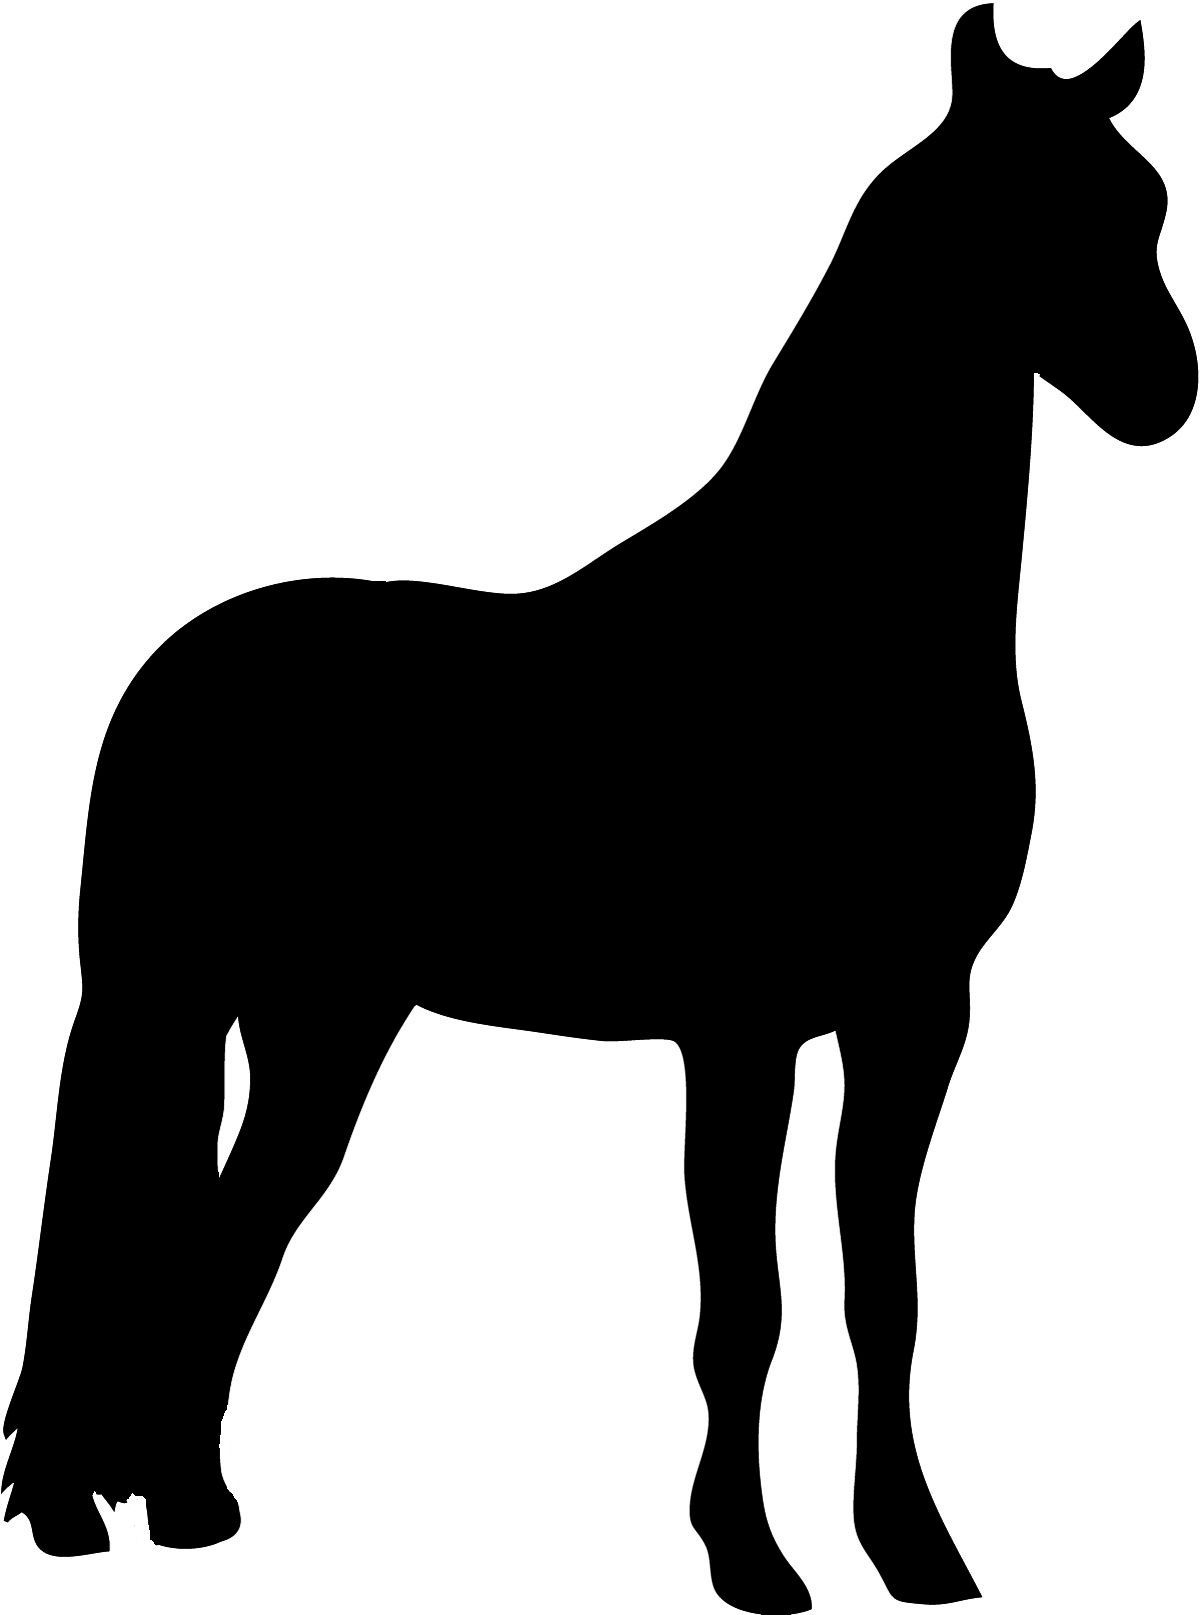 Pferde Schablonen | Scherenschnitt Vorlagen Tiere bestimmt für Pferde Schablonen